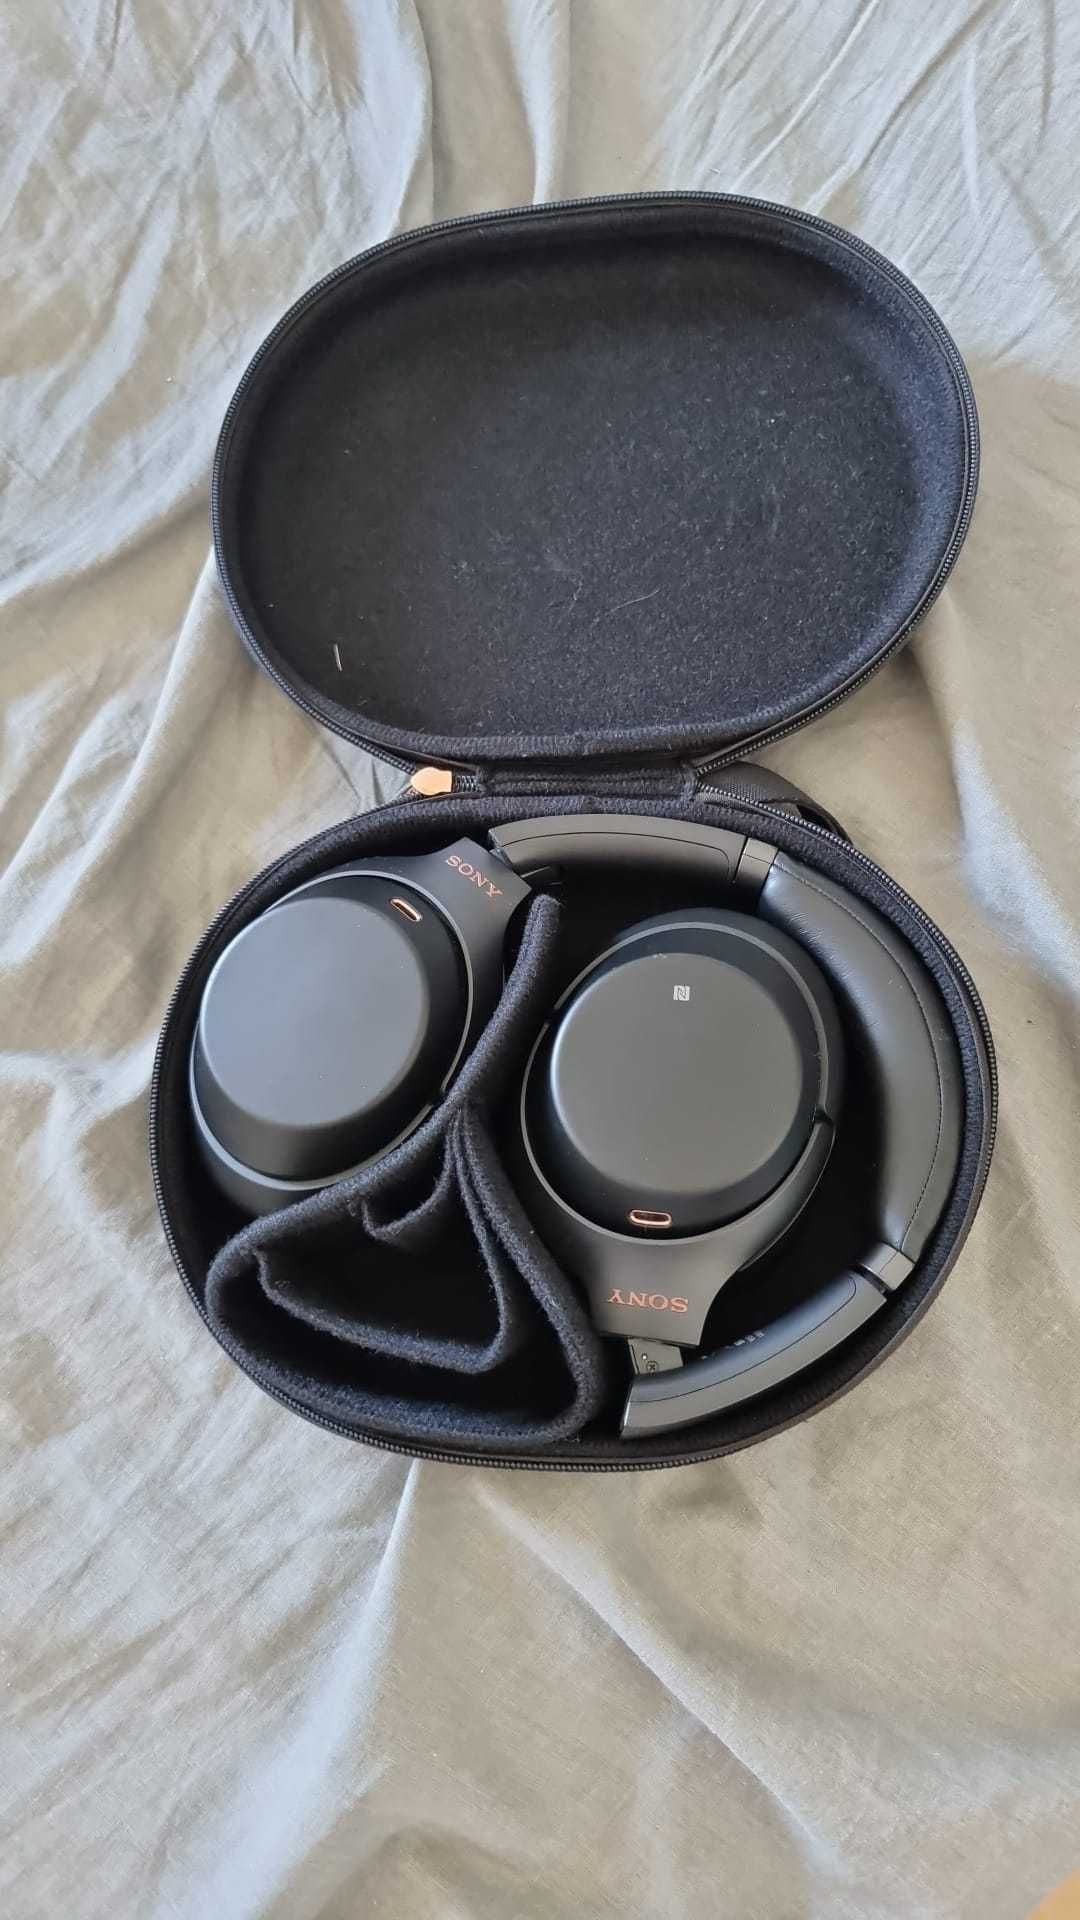 headphones bluetooth SONY WH-1000XM3